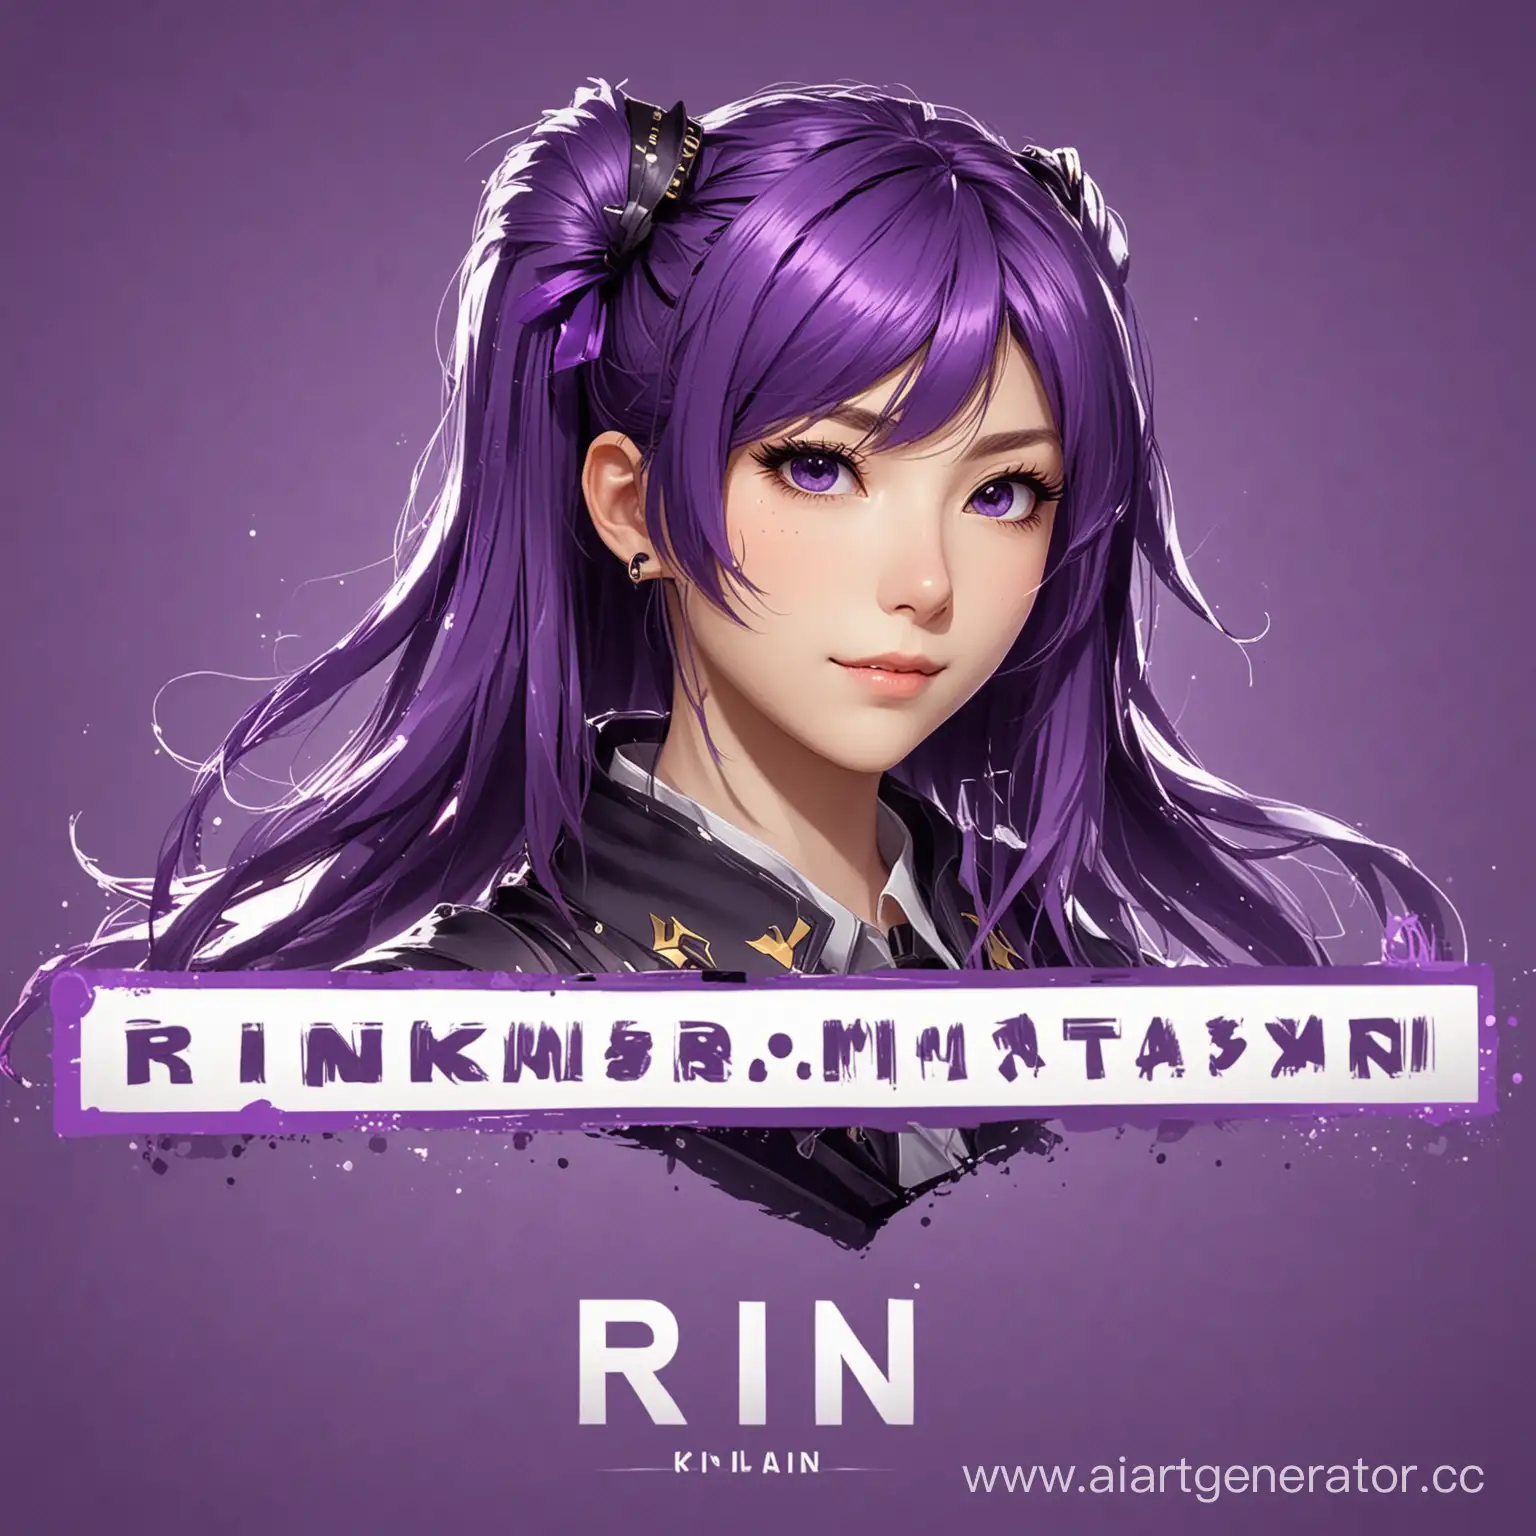 Оформление для стримера с никнеймом Rin, в фиолетовых цветах